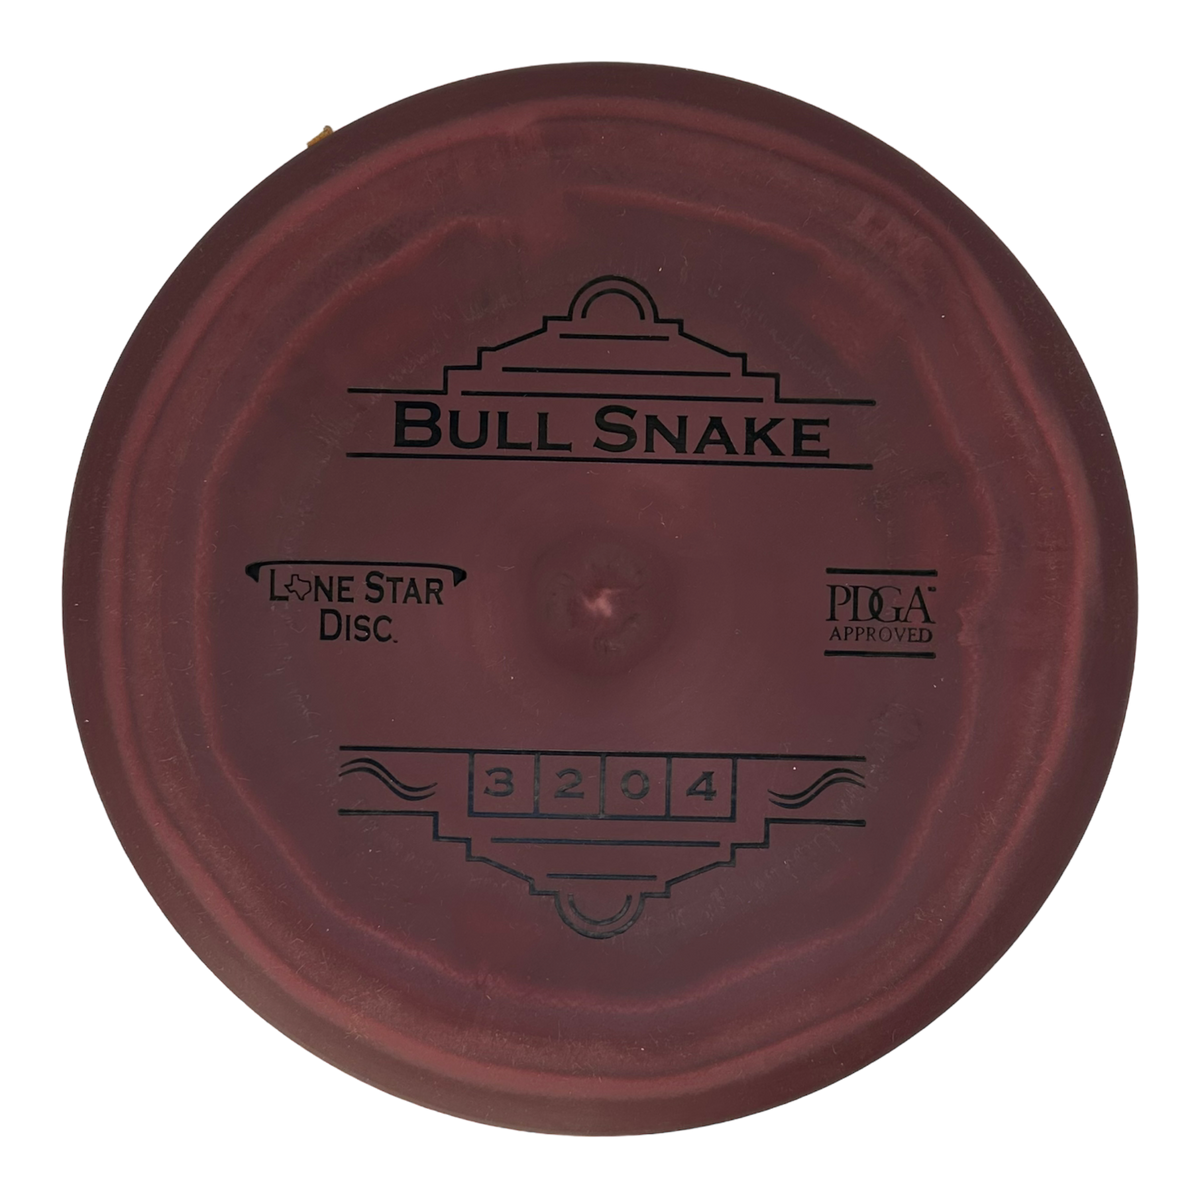 Lone Star Disc Victor 2 (V2) Bull Snake